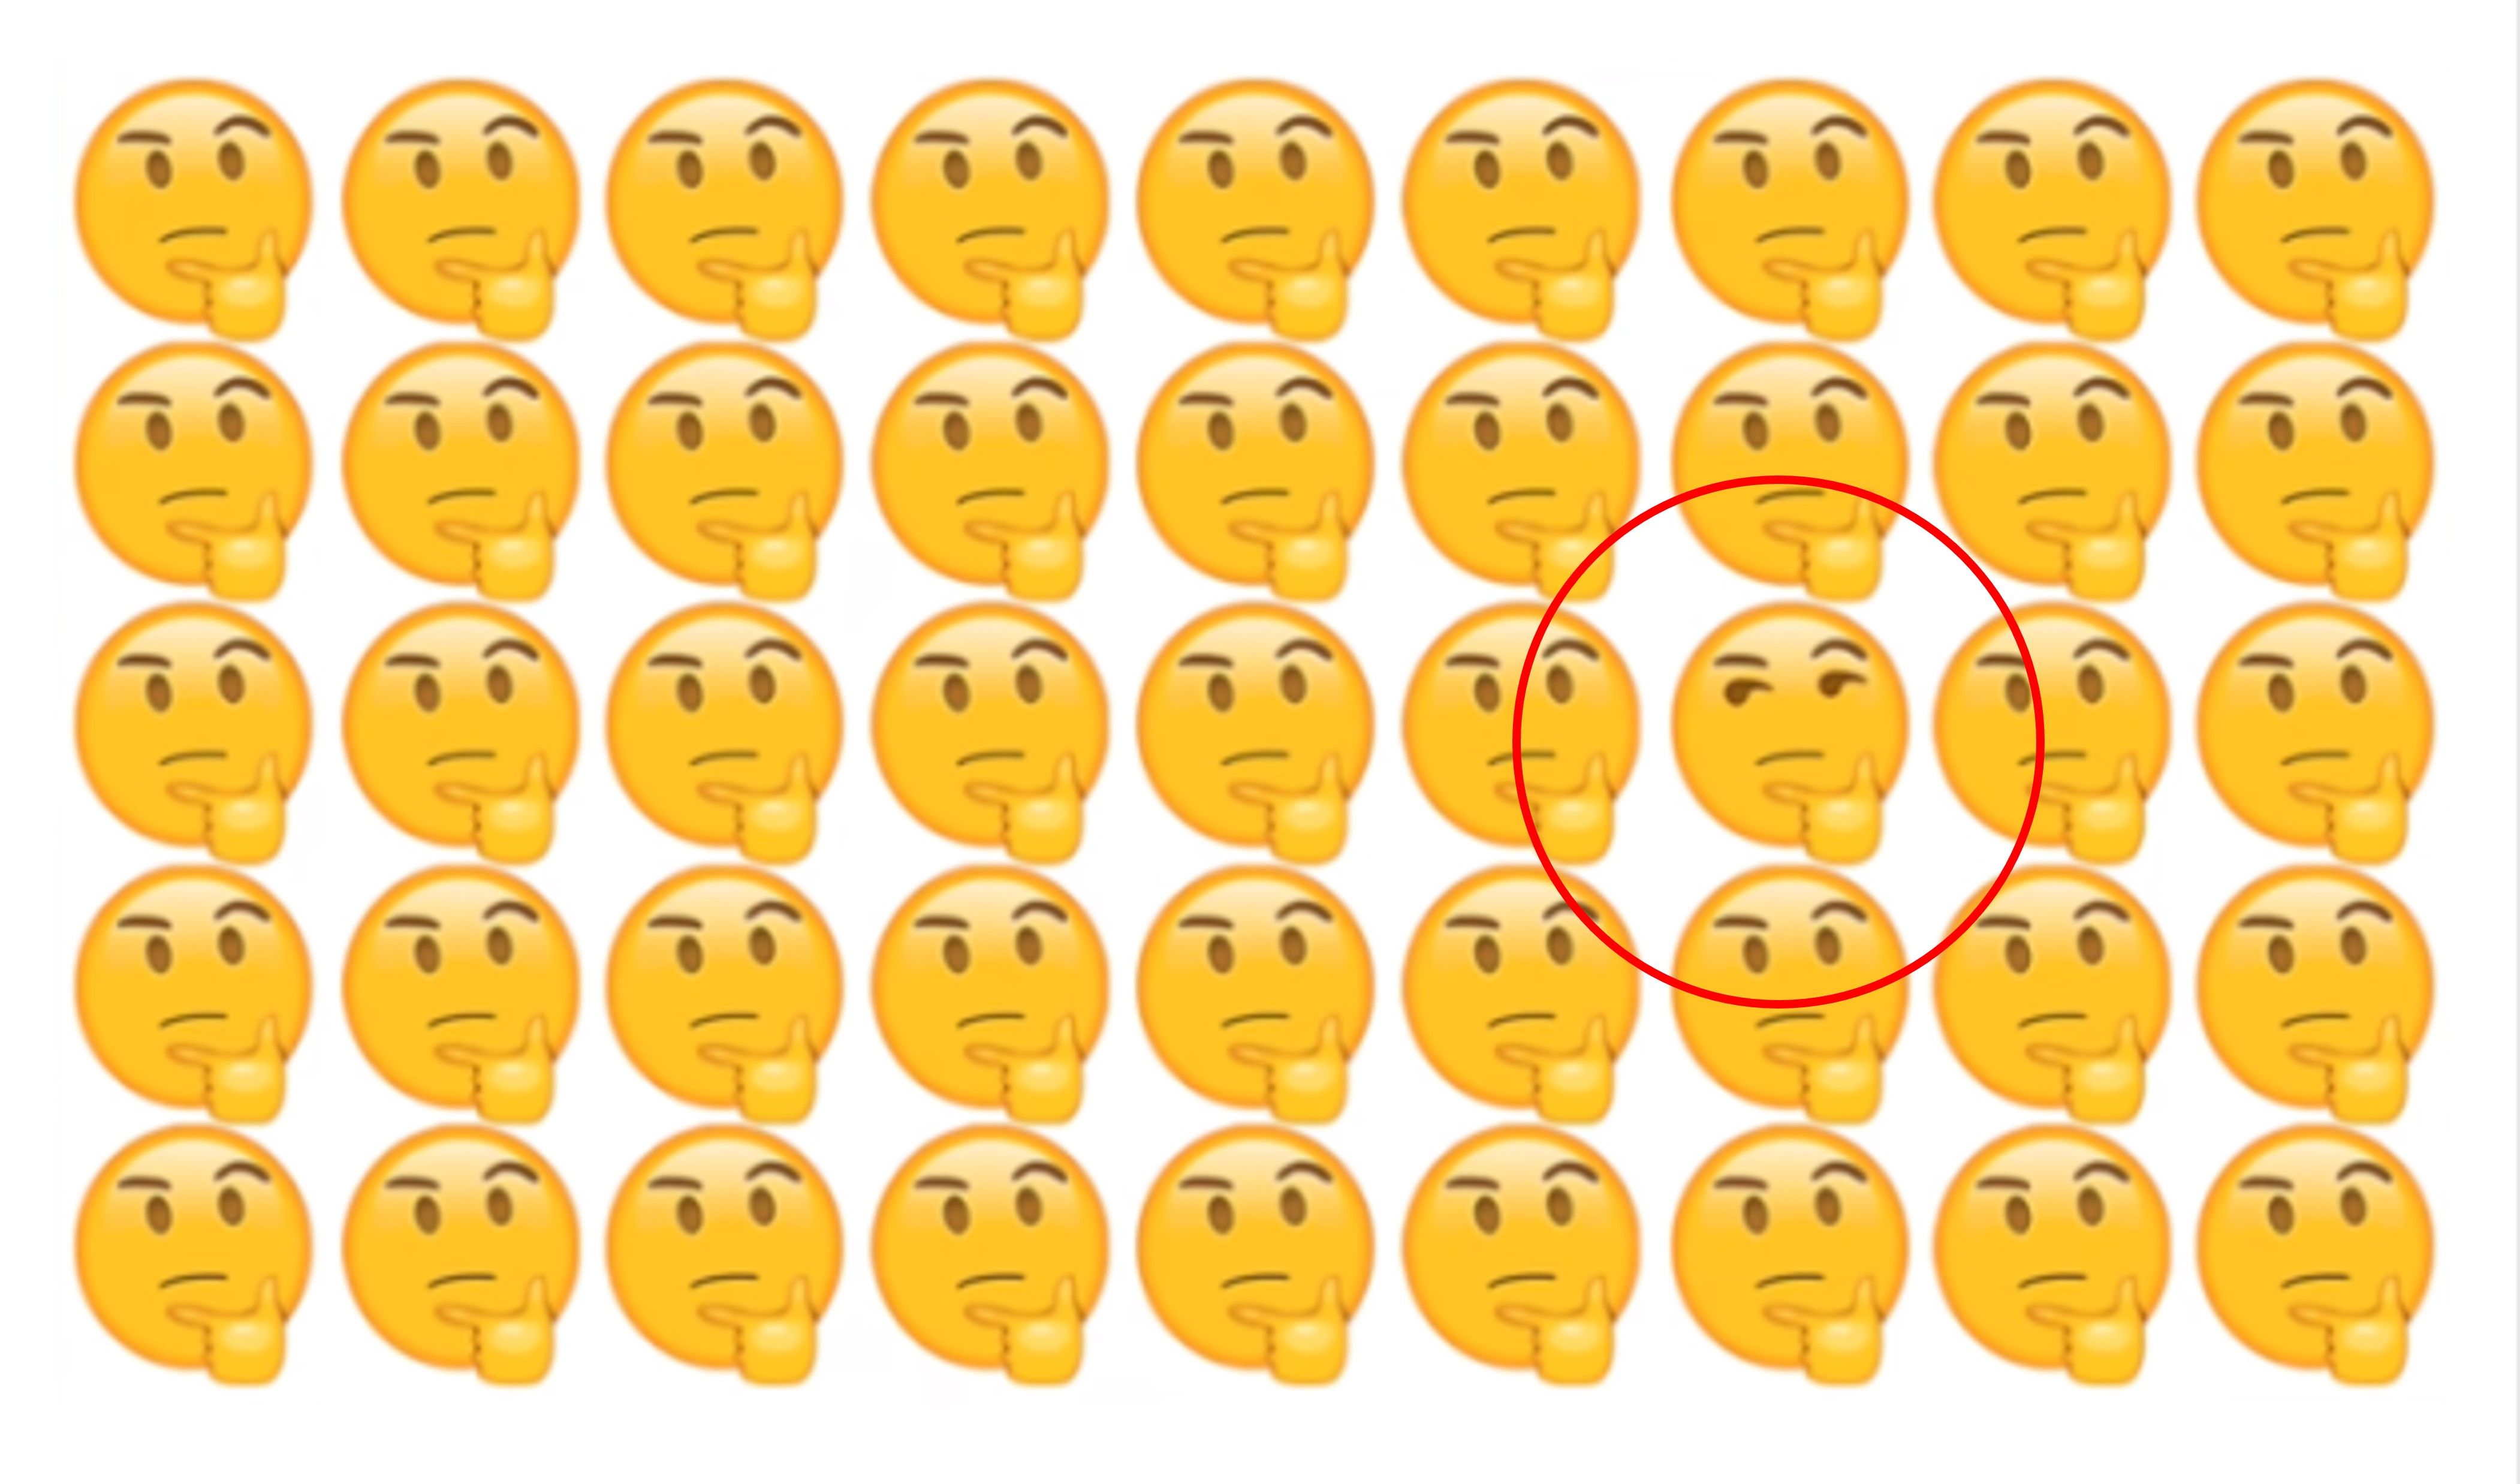 Ternyata disini letak emoji wajah yang menyebalkan.*